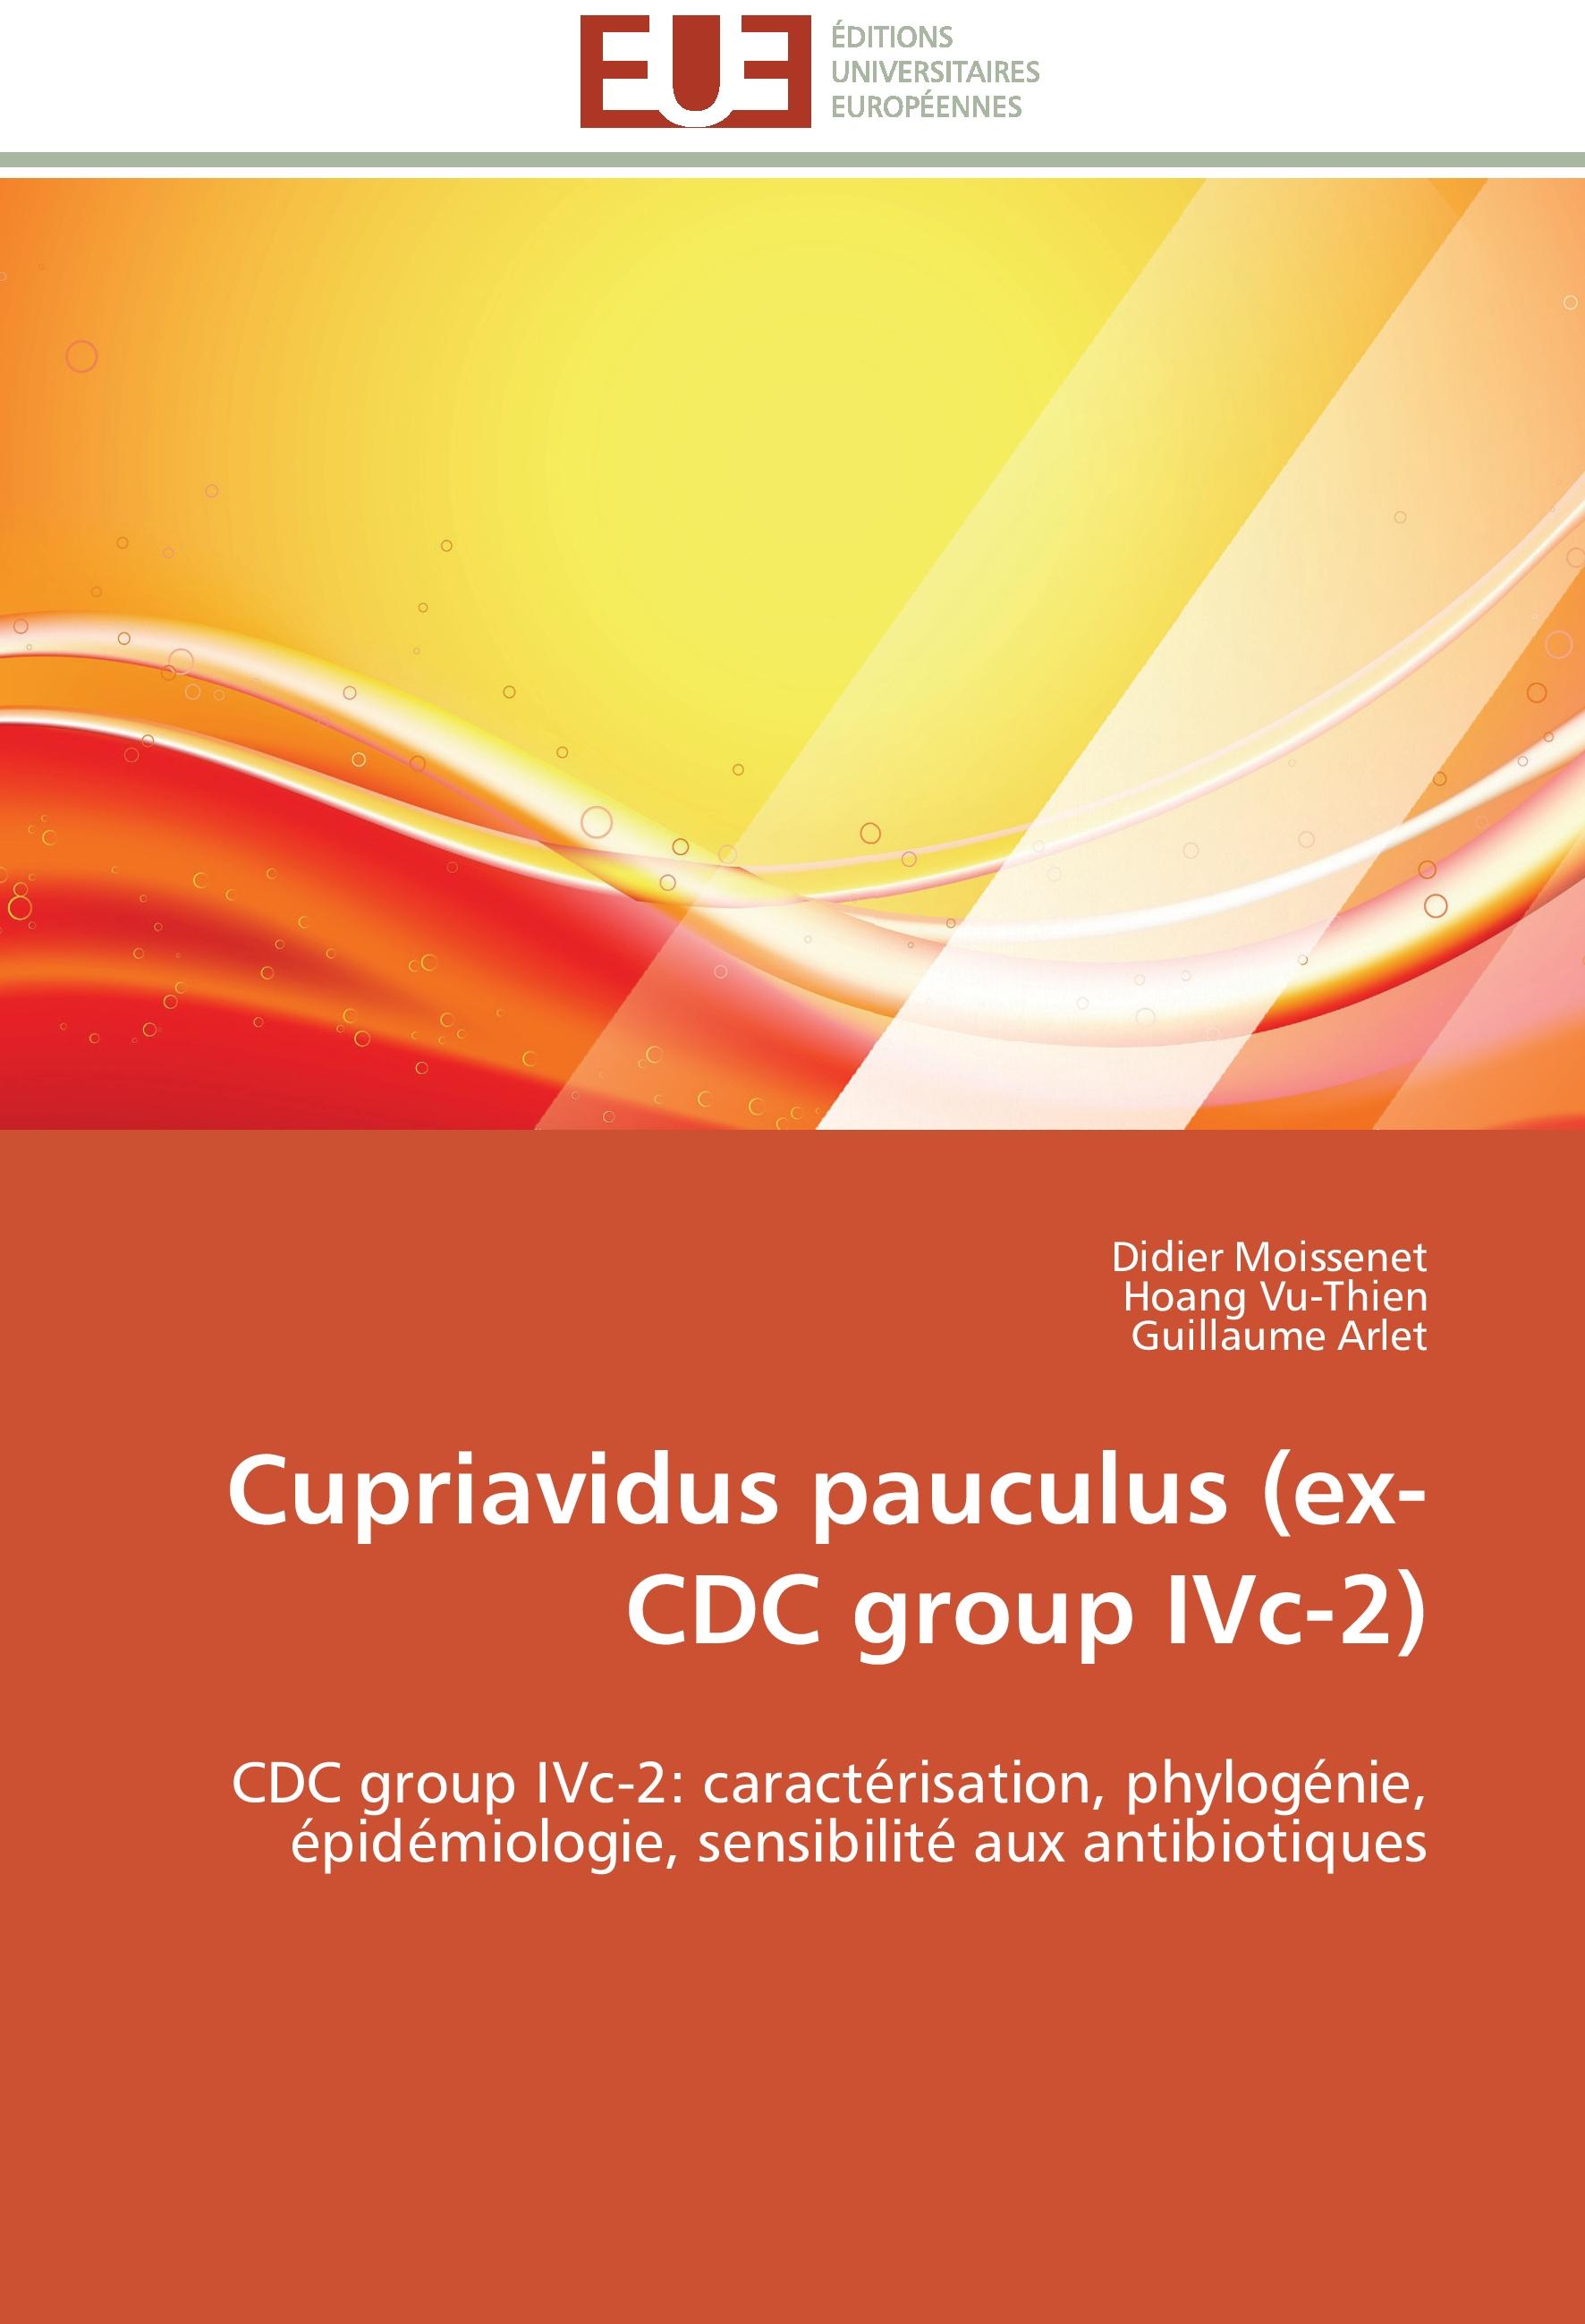 Cupriavidus pauculus (ex-CDC group IVc-2) - Didier Moissenet Hoang Vu-Thien Guillaume Arlet